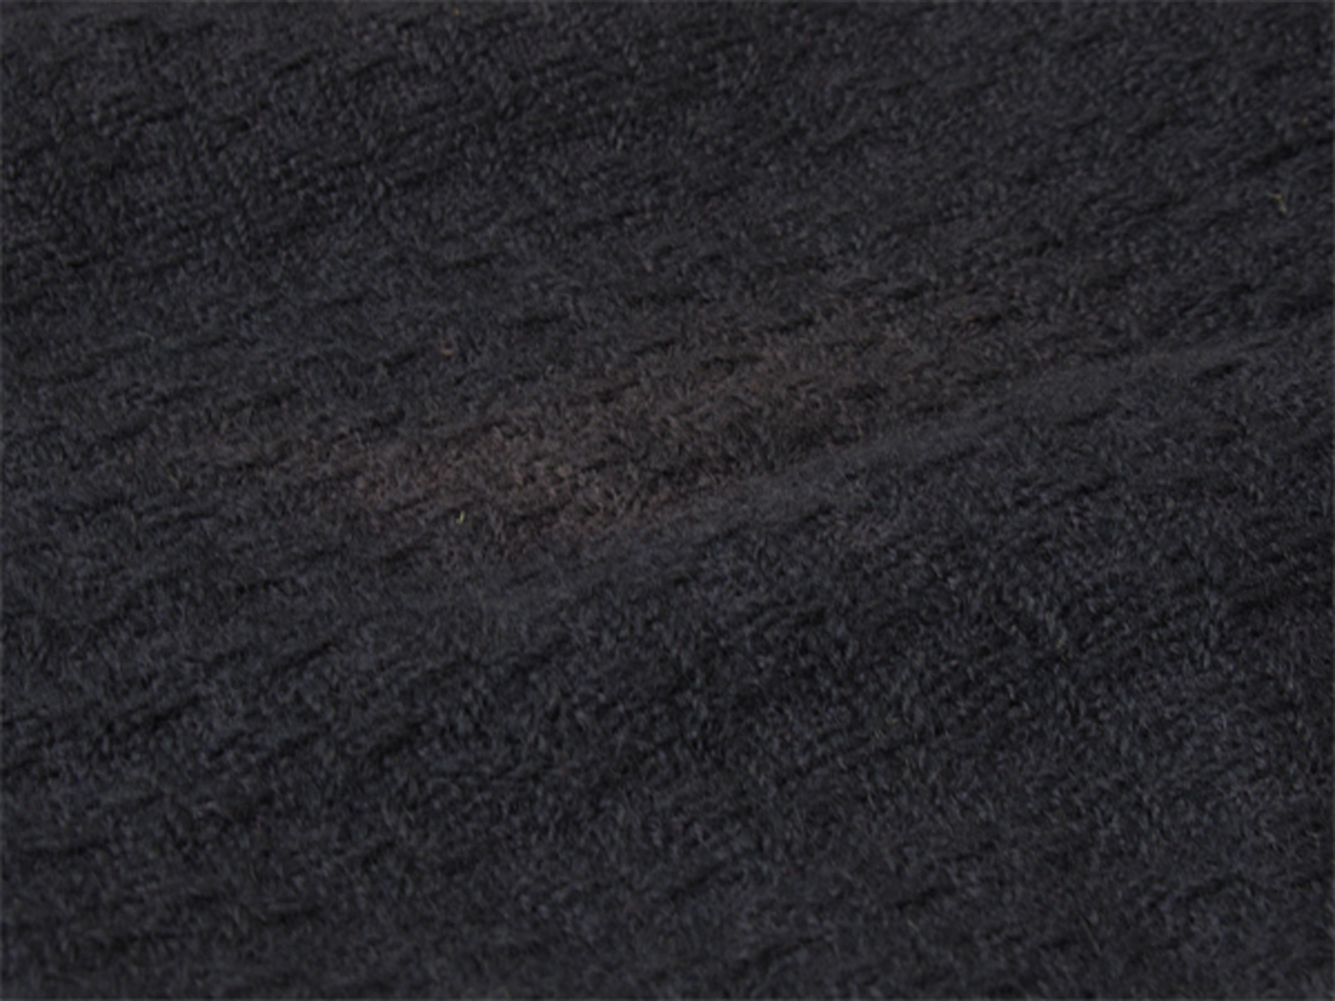 シャネル スカート タイト ボトムス レディース ♯38サイズ ニット ネイビー ウール 毛 シルク 絹 CHANEL T19120 